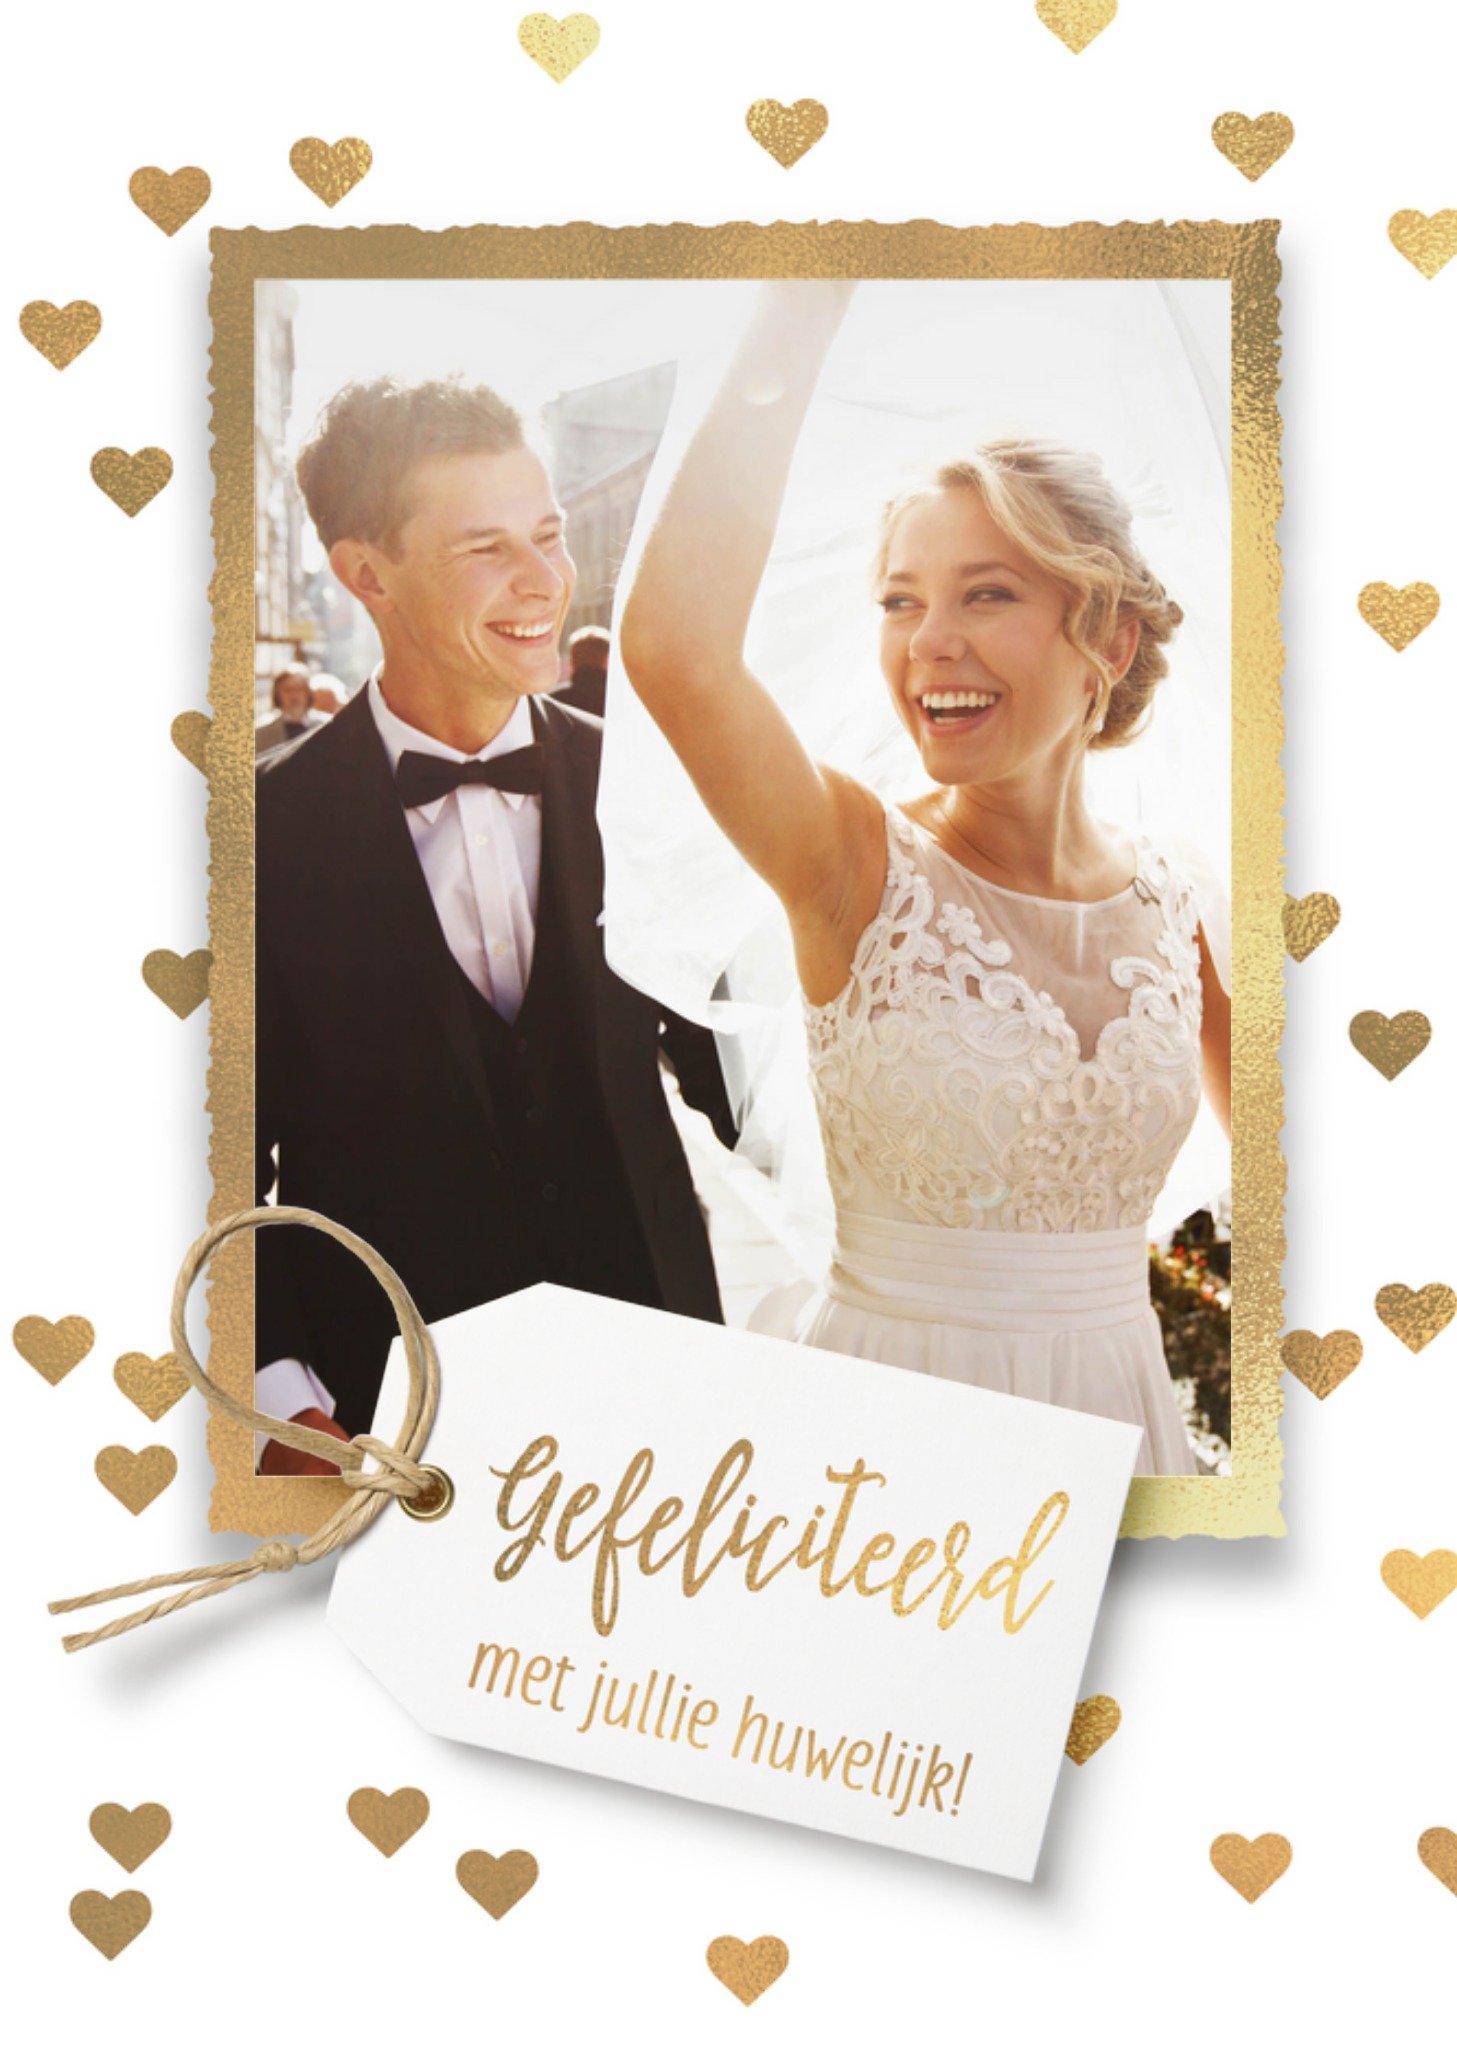 Luckz - Huwelijkskaart - Gefeliciteerd - Gouden harten - Met foto